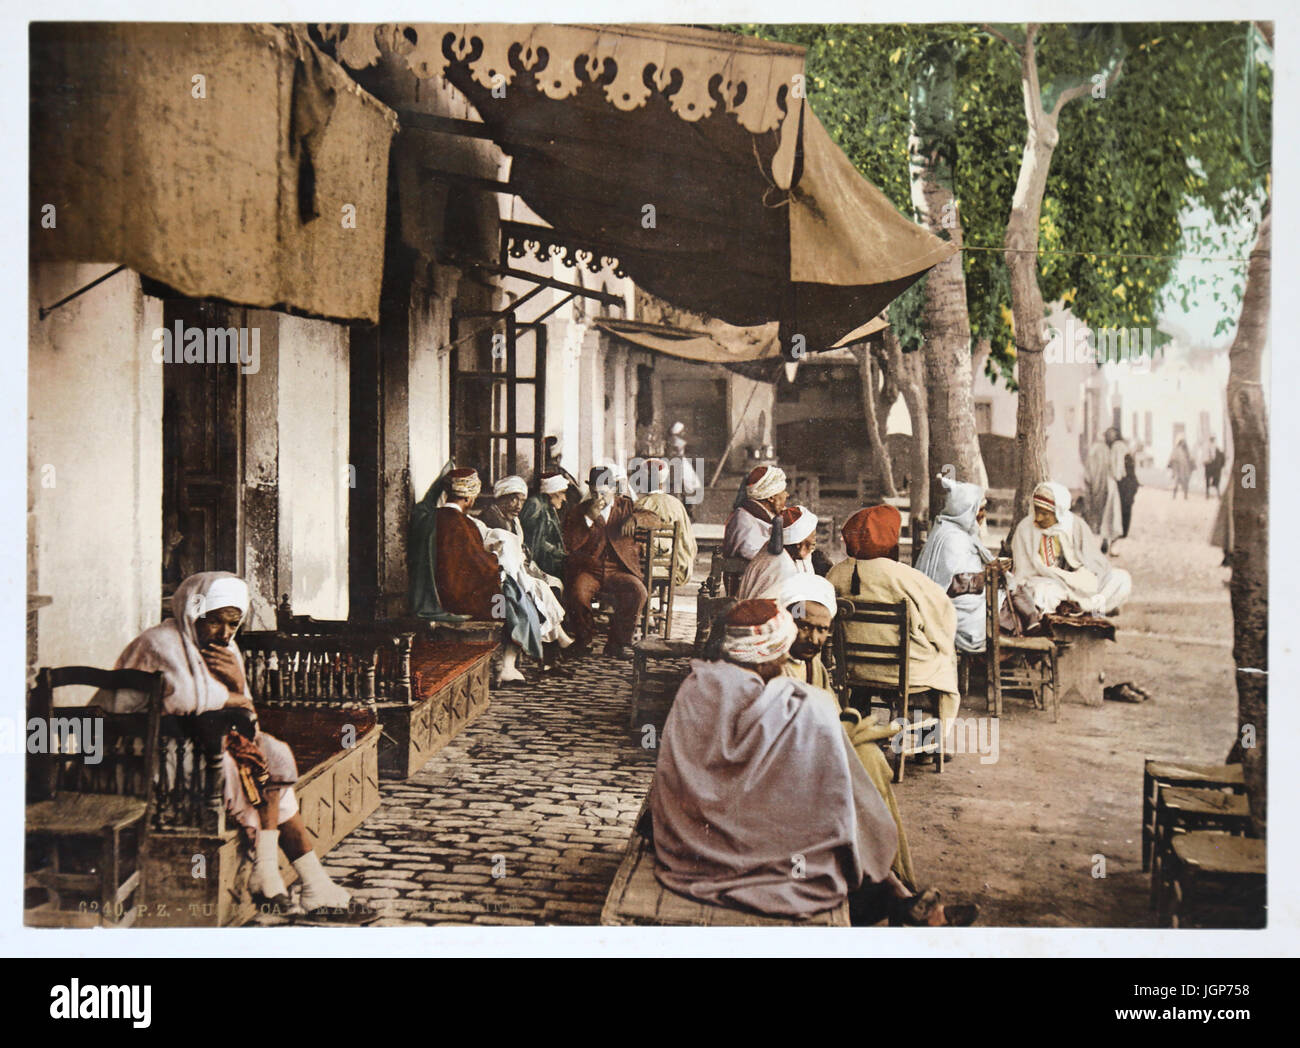 Blick auf Terrasse ein maurisches Café in Tunis. Stammkunden im Jahre 1899. Photochrome Print. Teil eines Fotoalbums Farbe. Stockfoto